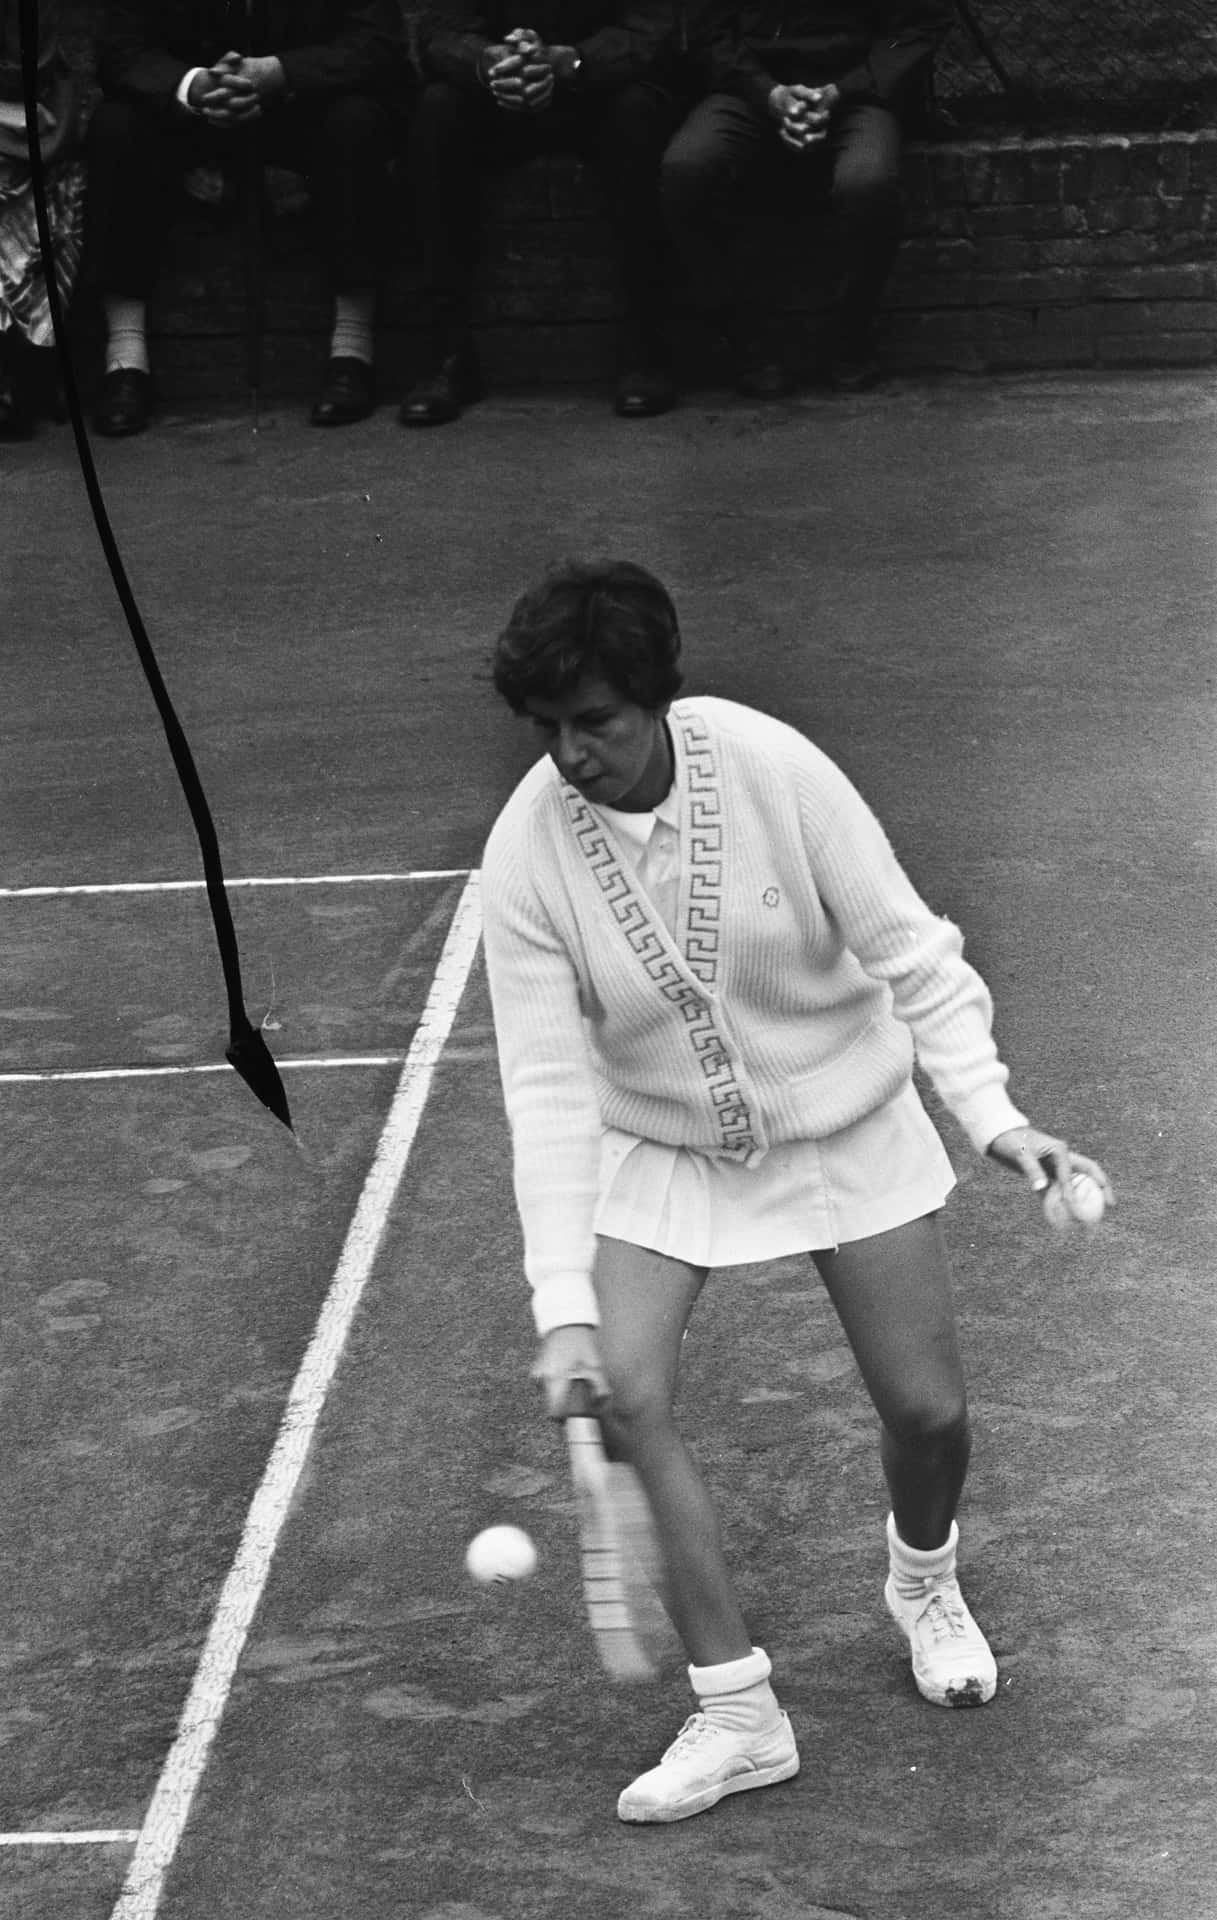 Maria Bueno i alle hvide dragter, der spiller tennis Wallpaper